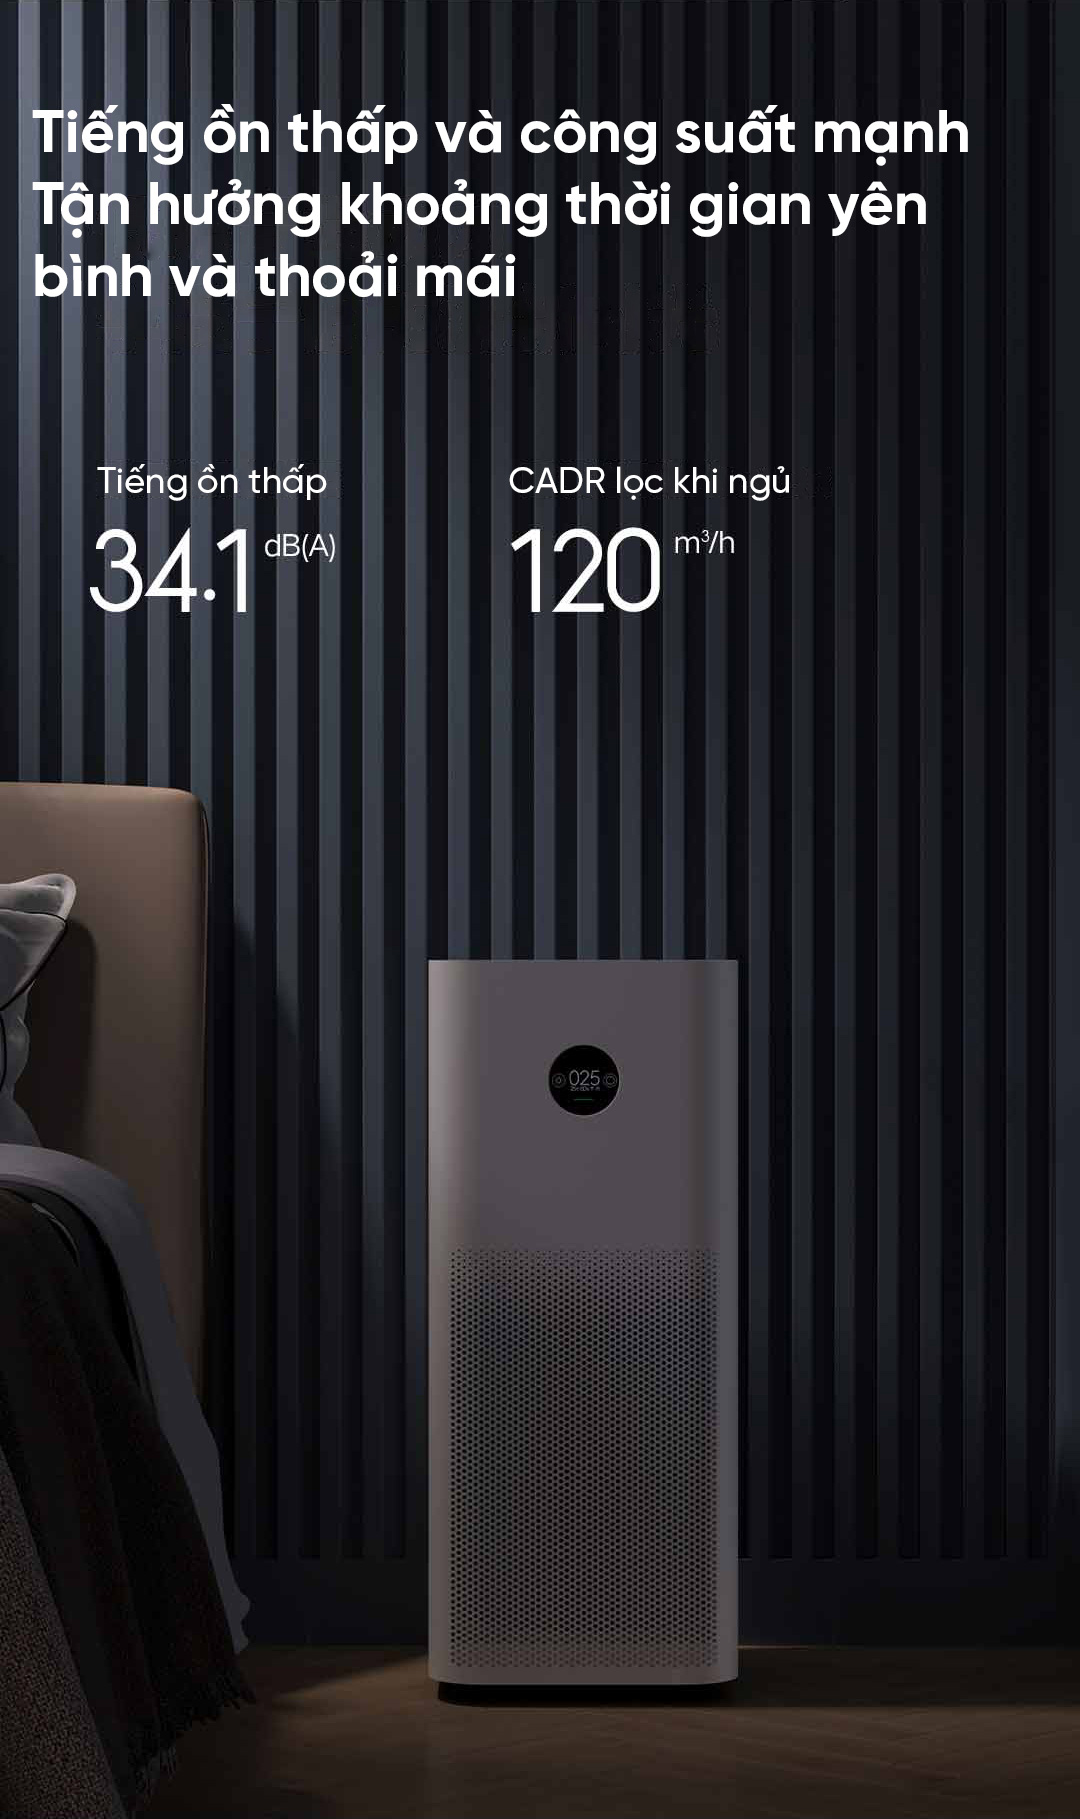 Cửa hàng bán máy lọc không khí Pro H có công suất mạnh và tiếng ồn thấp chỉ 34,1dB cho bạn giấc ngủ yên tĩnh mà không bị làm phiền